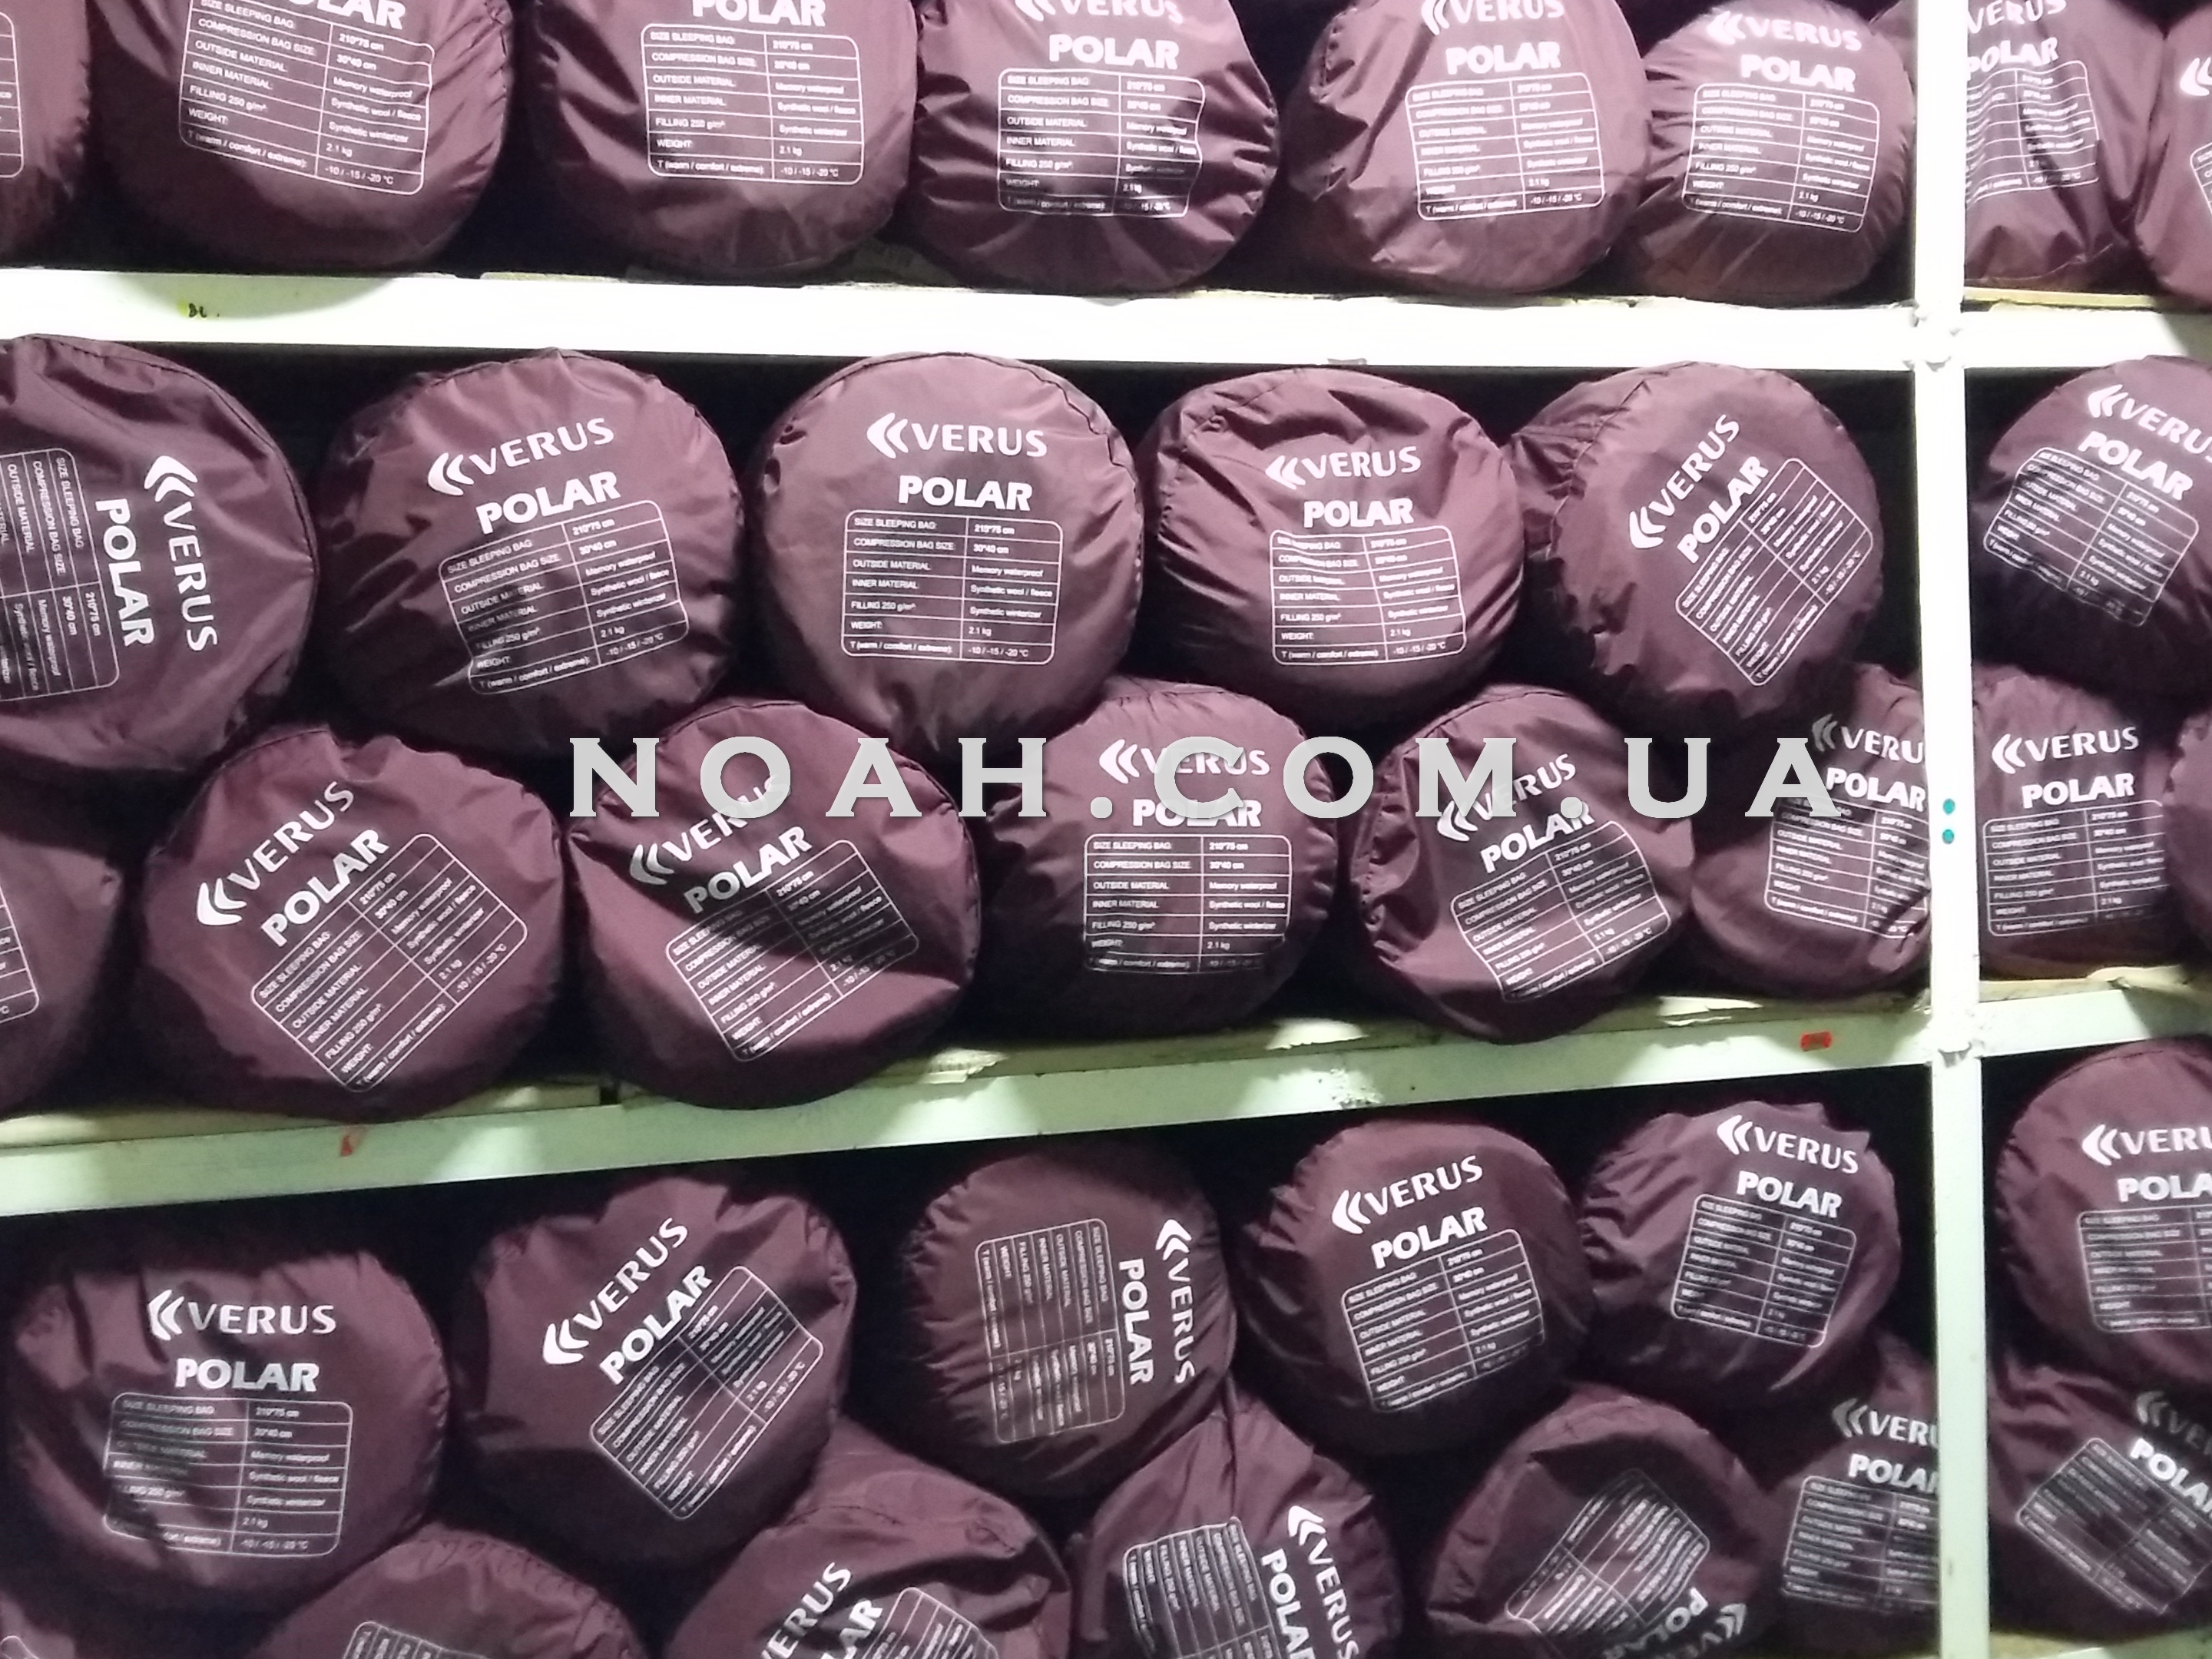 Спальные мешки - Noah.com.ua | Магазин Noah (Ной) - Купить спальники от производителя, цены